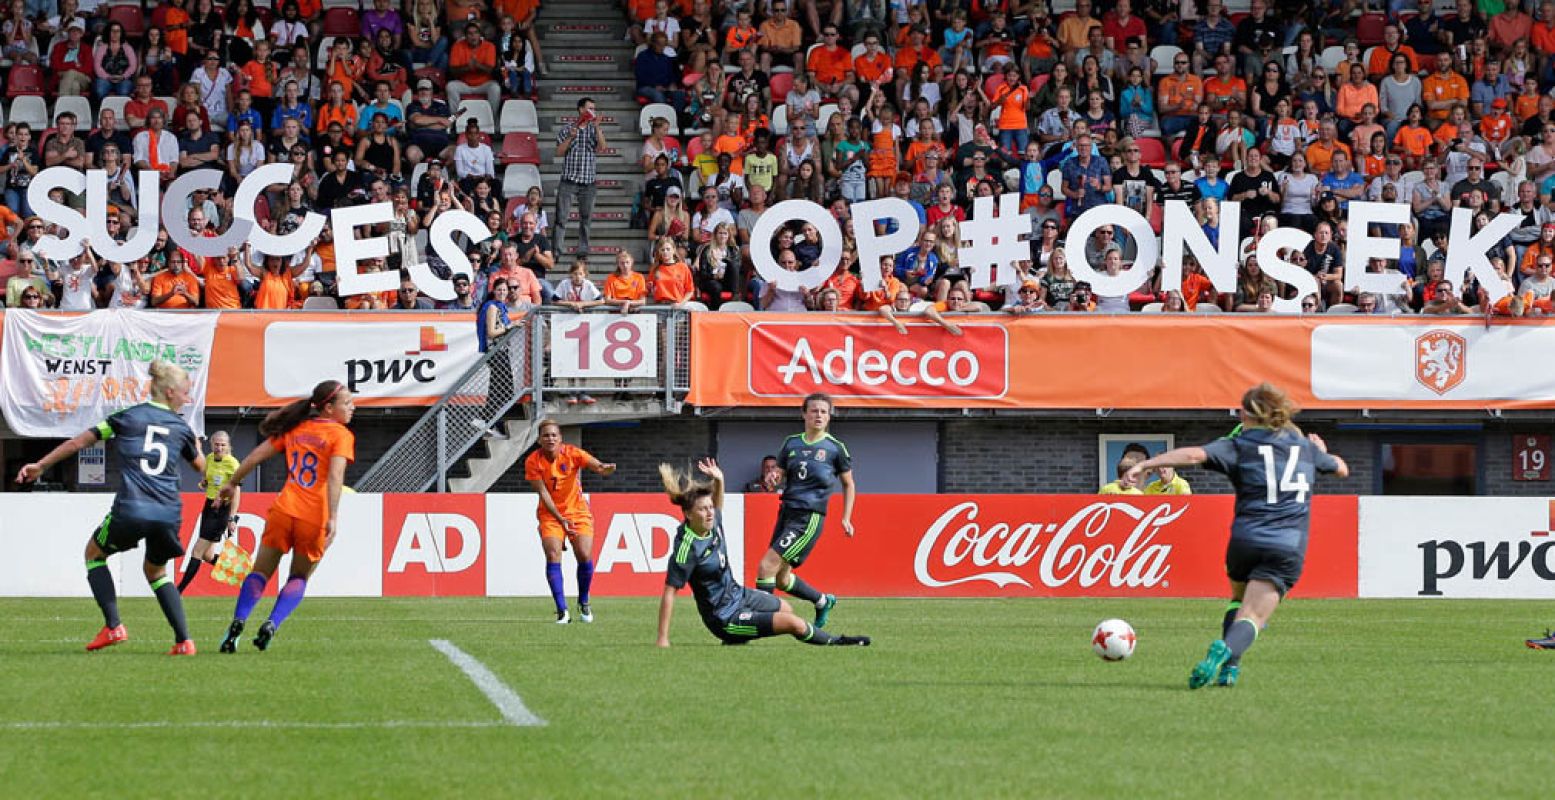 Nederland is voor de eerste keer gastheer van het EK vrouwenvoetbal. Foto: KNVB Media